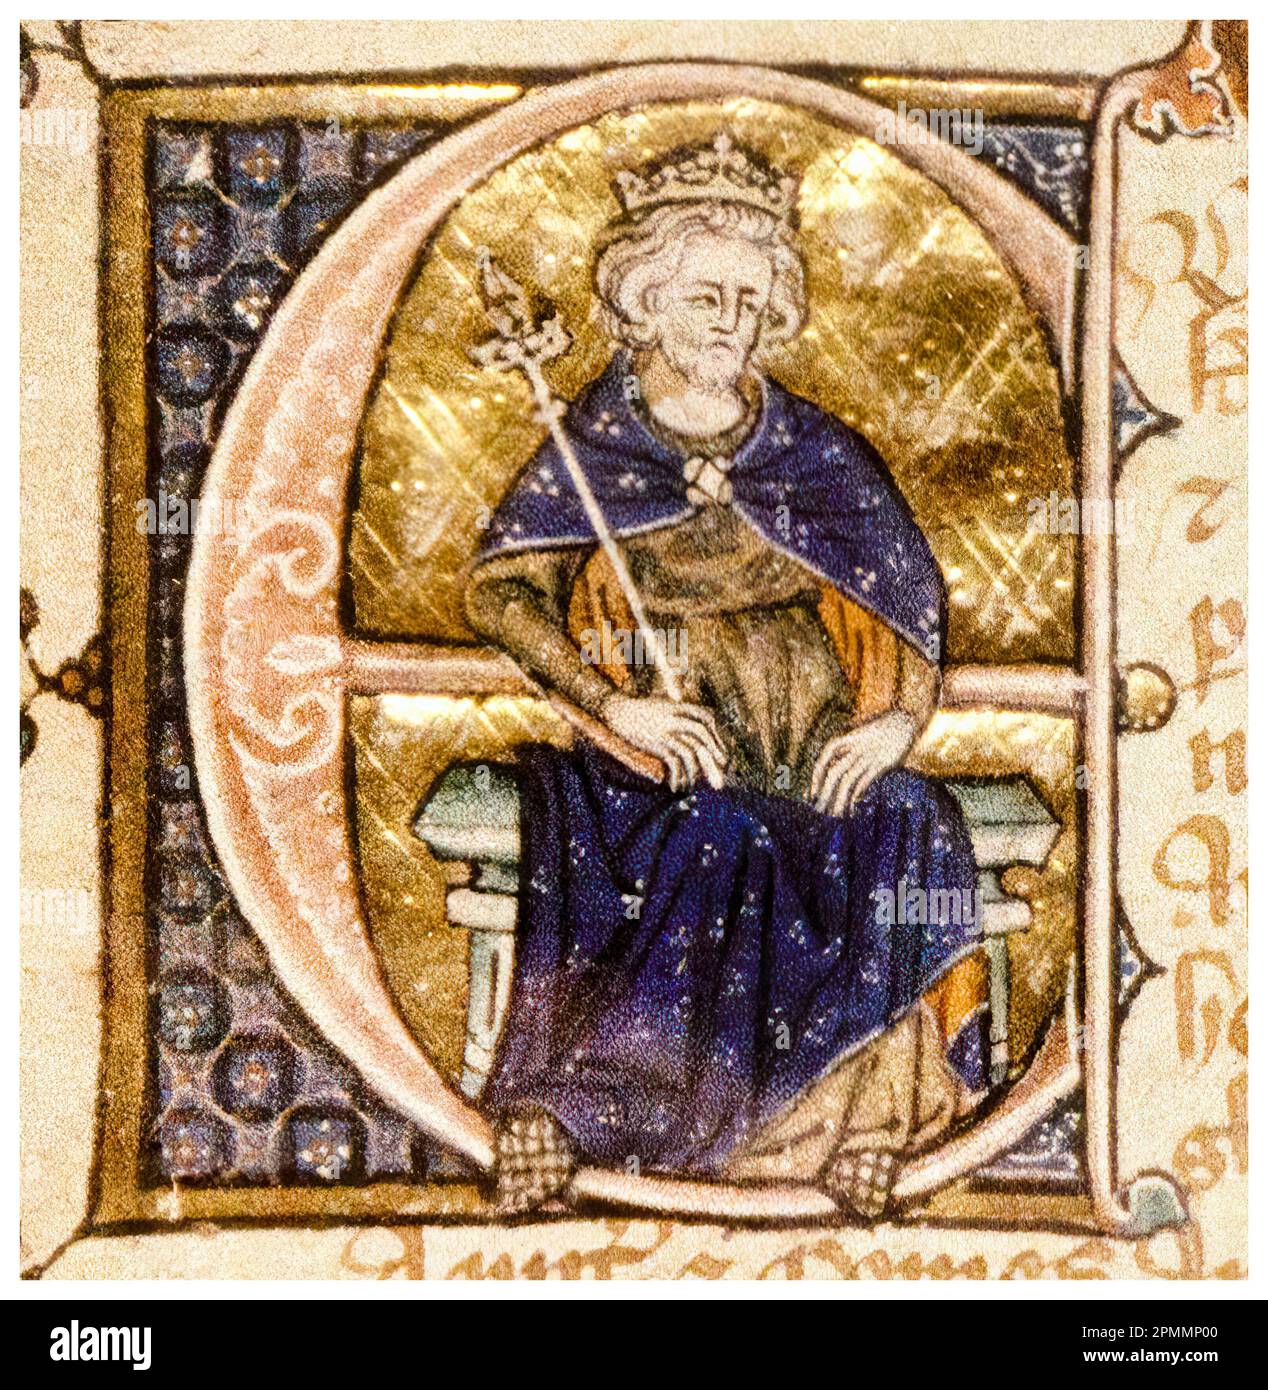 Edoardo II d'Inghilterra (1284-1327), chiamato anche Edoardo di Caernarfon, re d'Inghilterra (1307-1327), dipinto manoscritto ritratto, circa 1320 Foto Stock